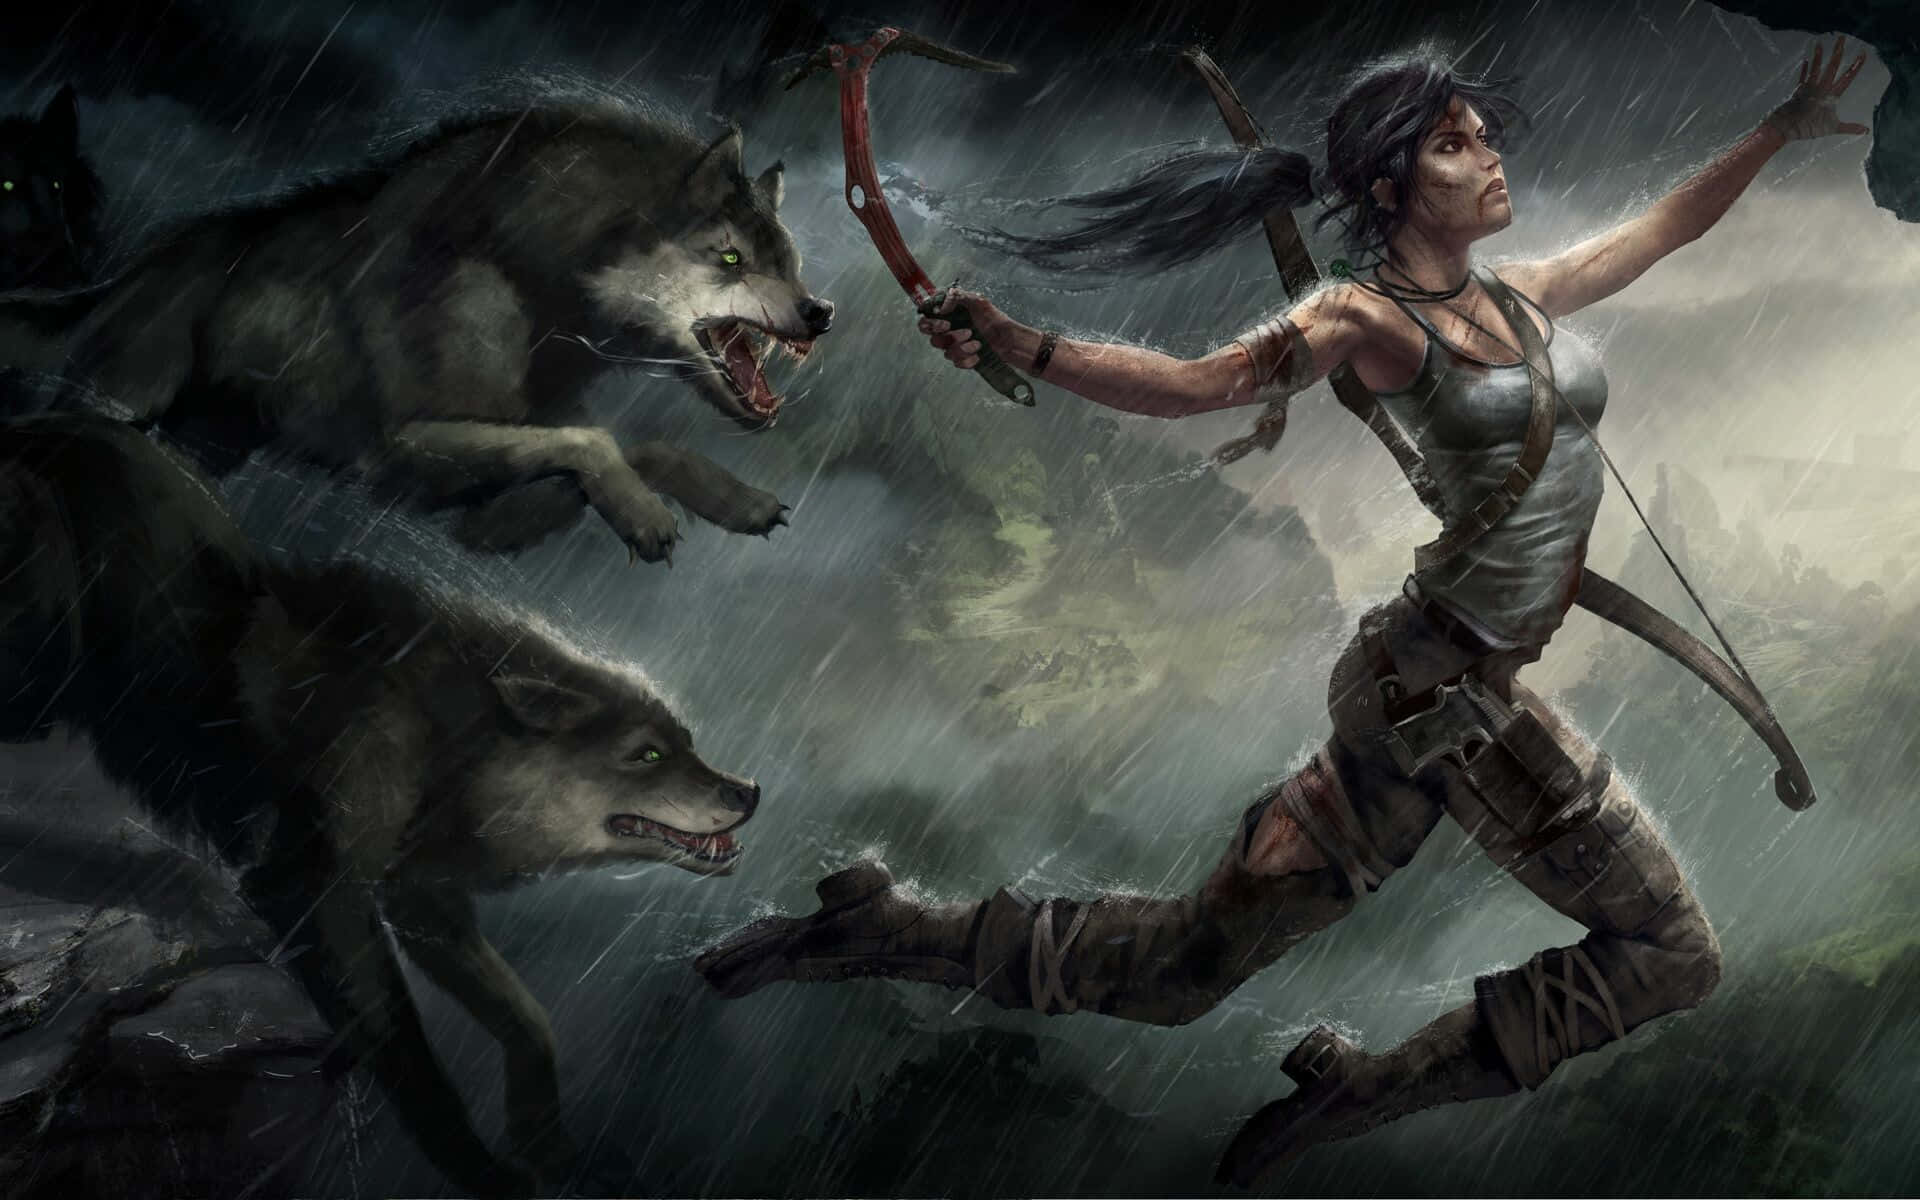 Lara Croft Battle Against Wolves Wallpaper